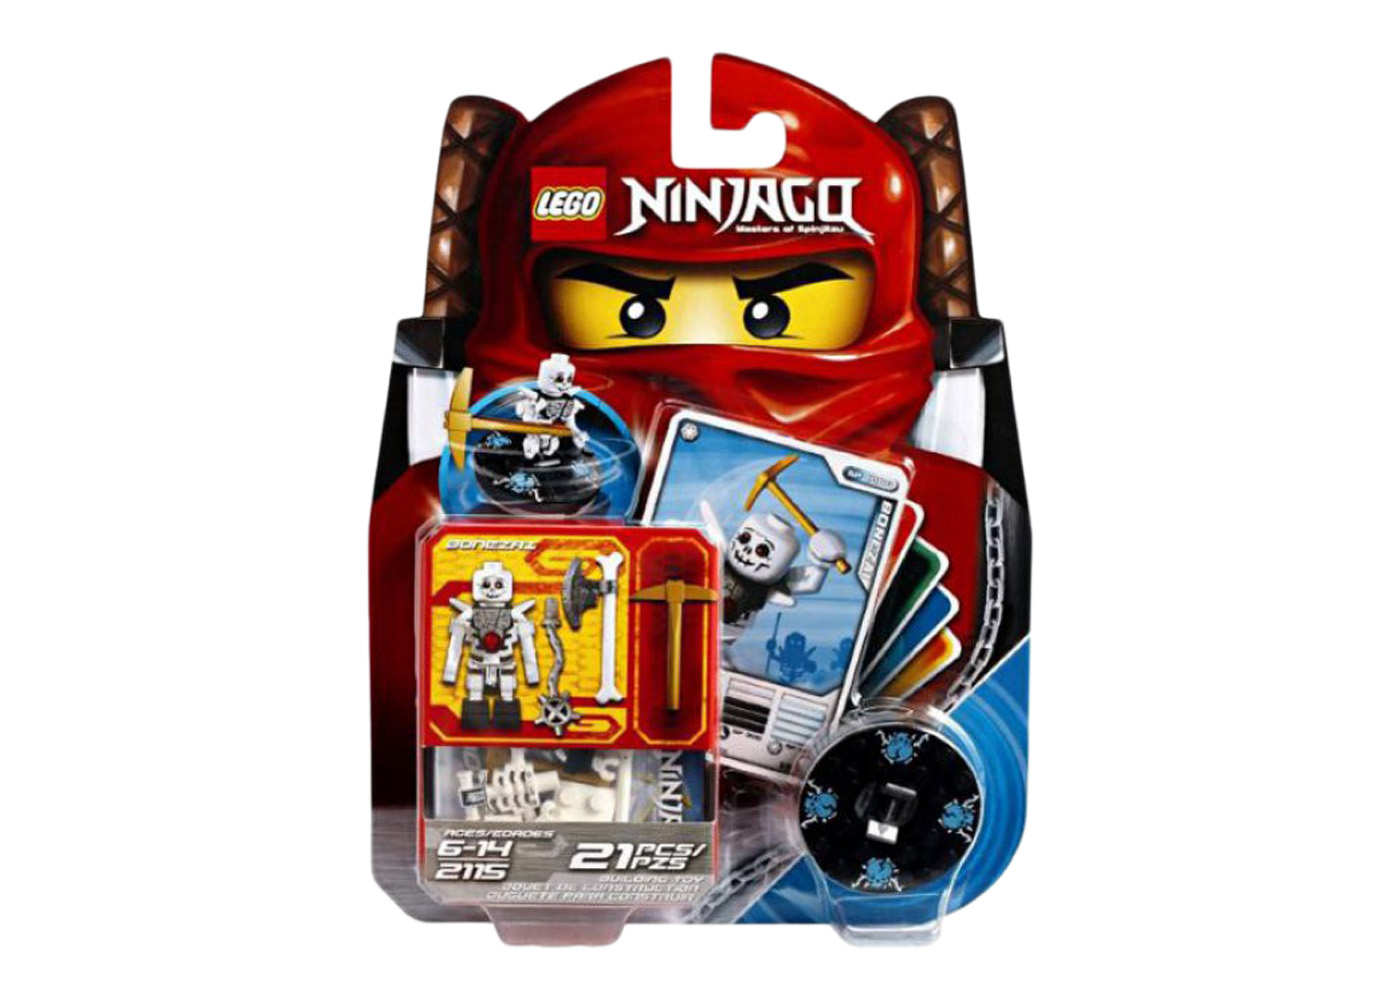 LEGO Ninjago Bonezai Set 2115